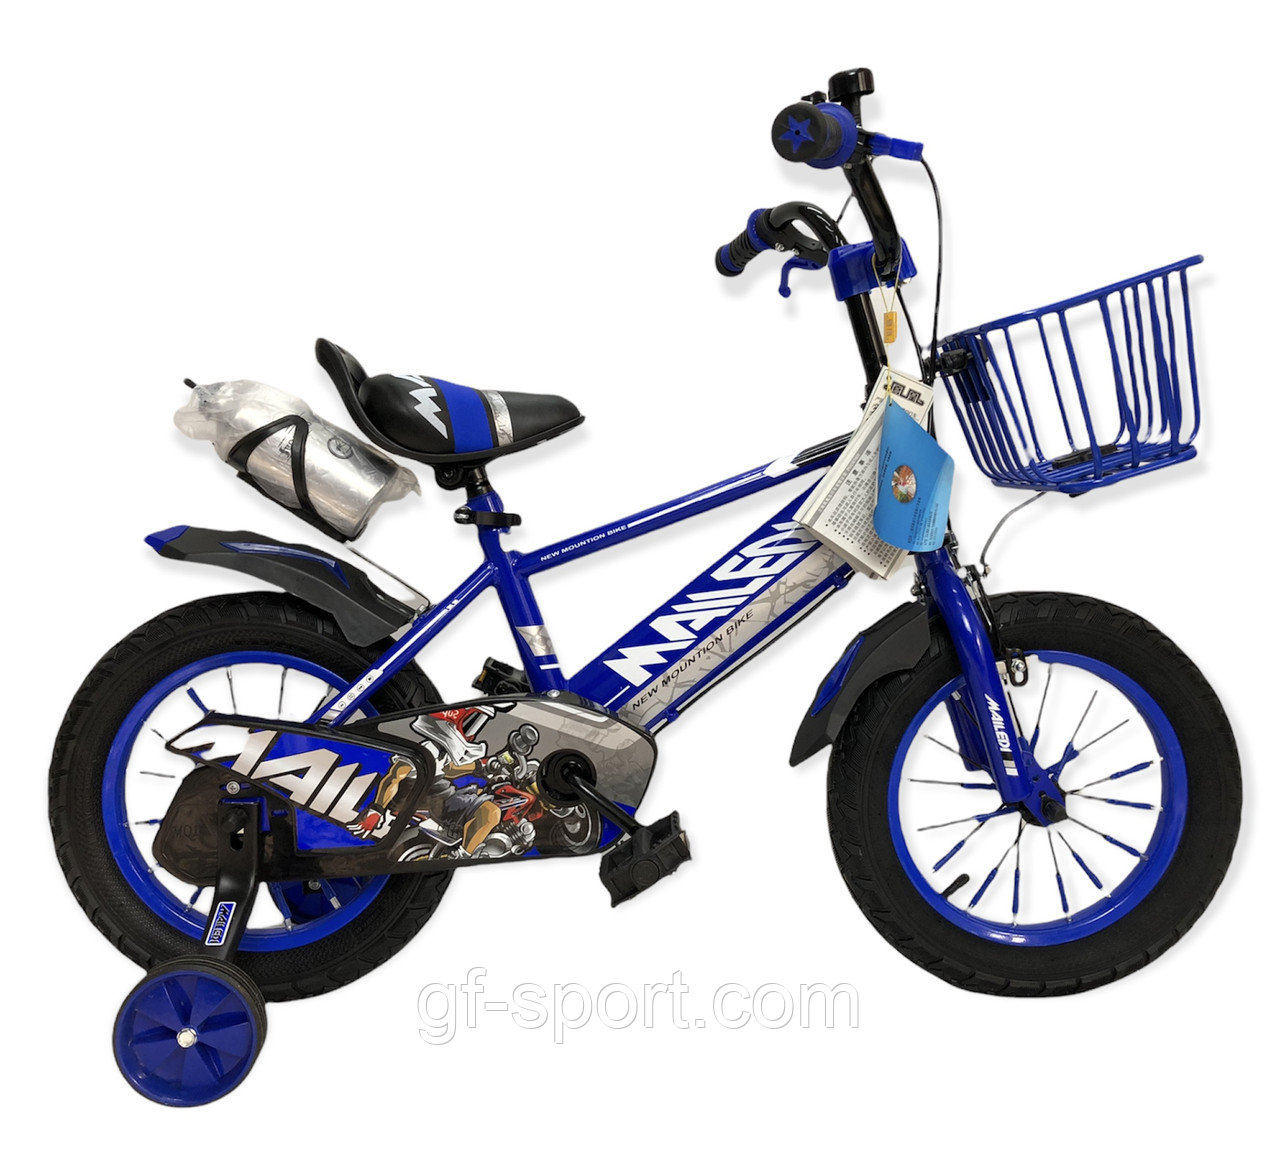 Велосипед Mailedi синий оригинал детский с холостым ходом 14 размер (507-14)